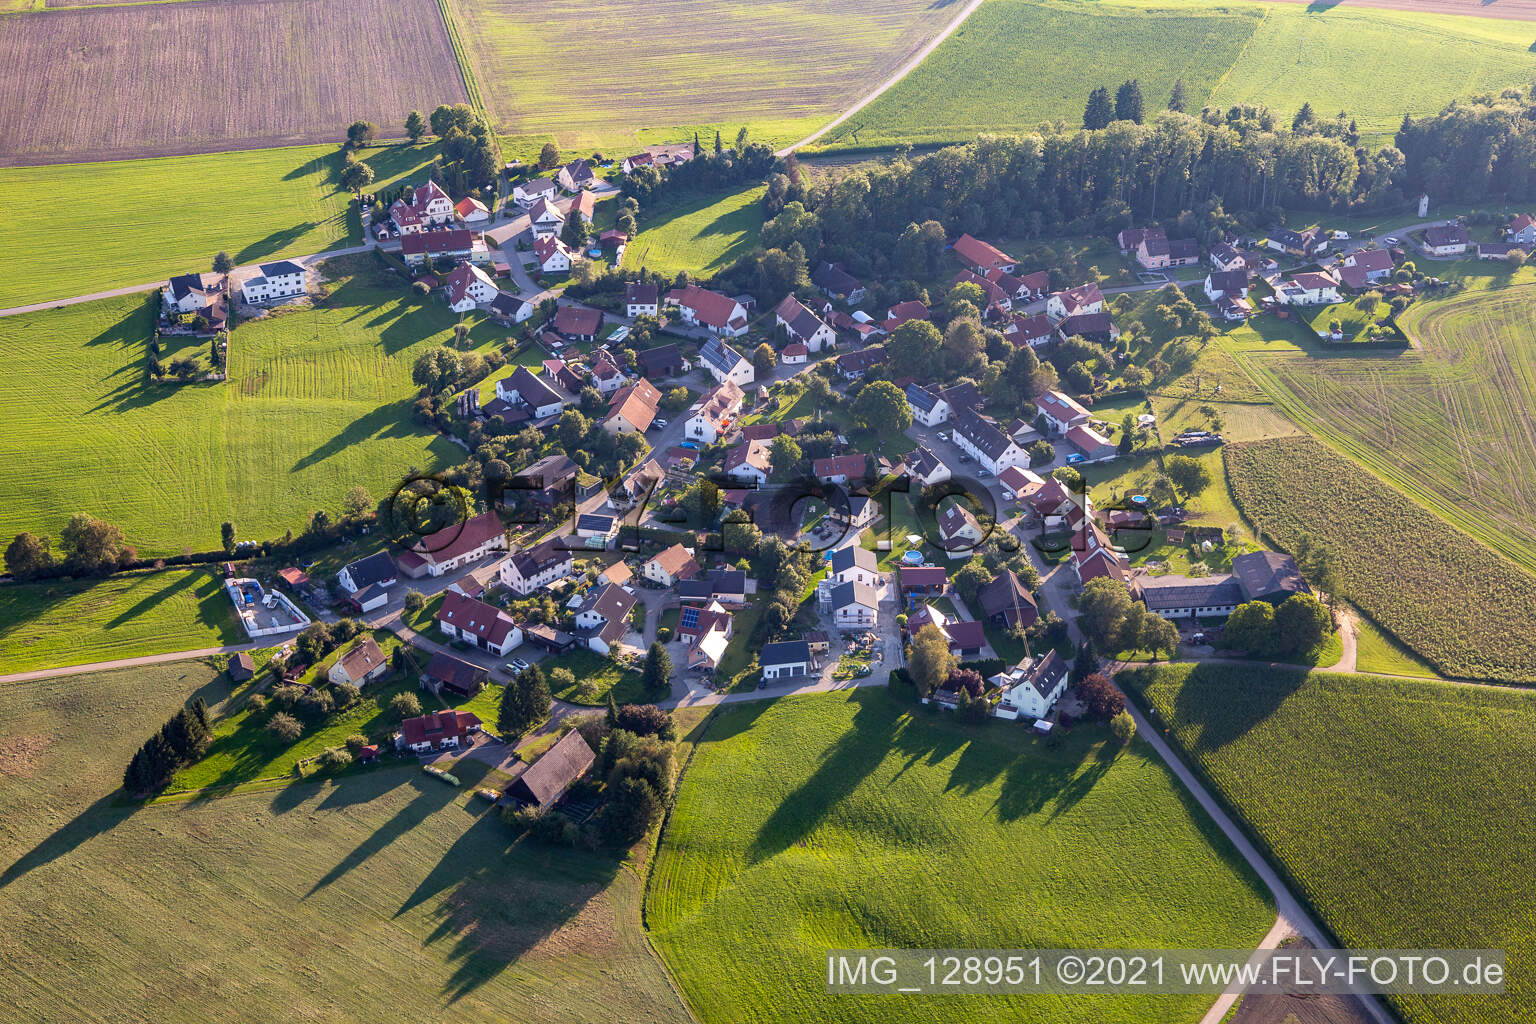 Luftbild von Ortsteil Tannweiler in Aulendorf im Bundesland Baden-Württemberg, Deutschland